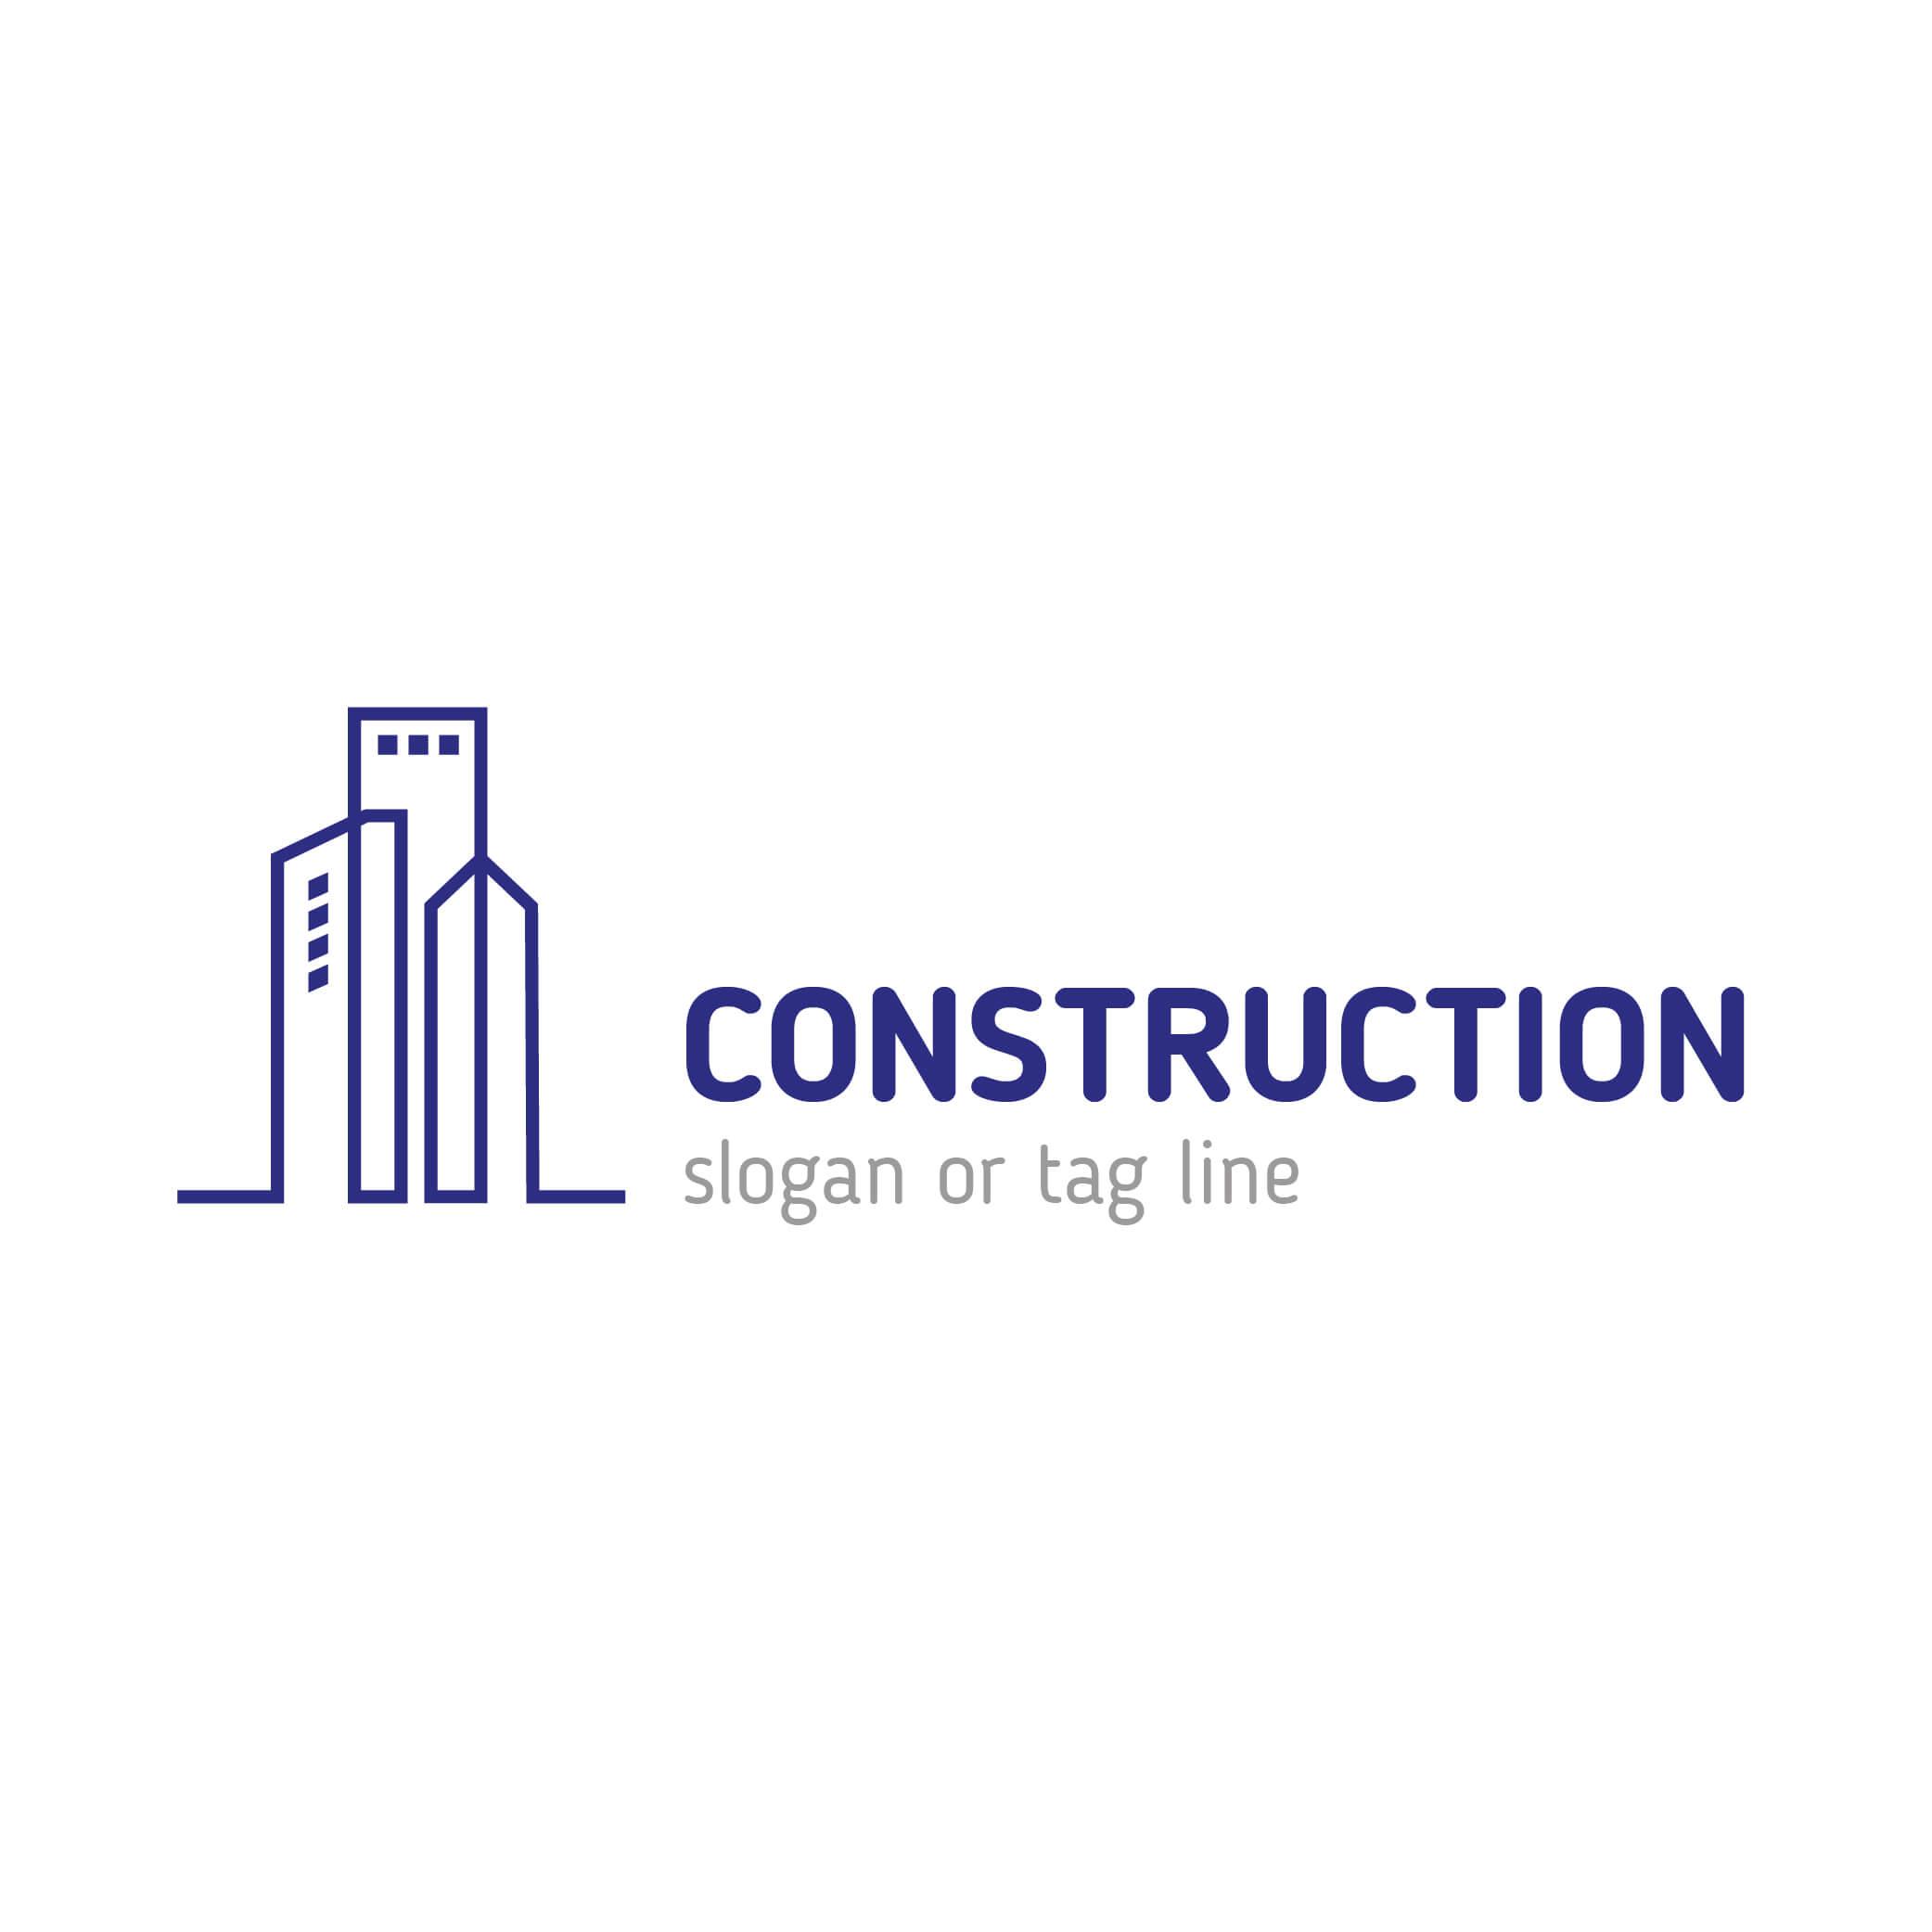 Construction Logo - Construction Real Estate company logo templates Vector